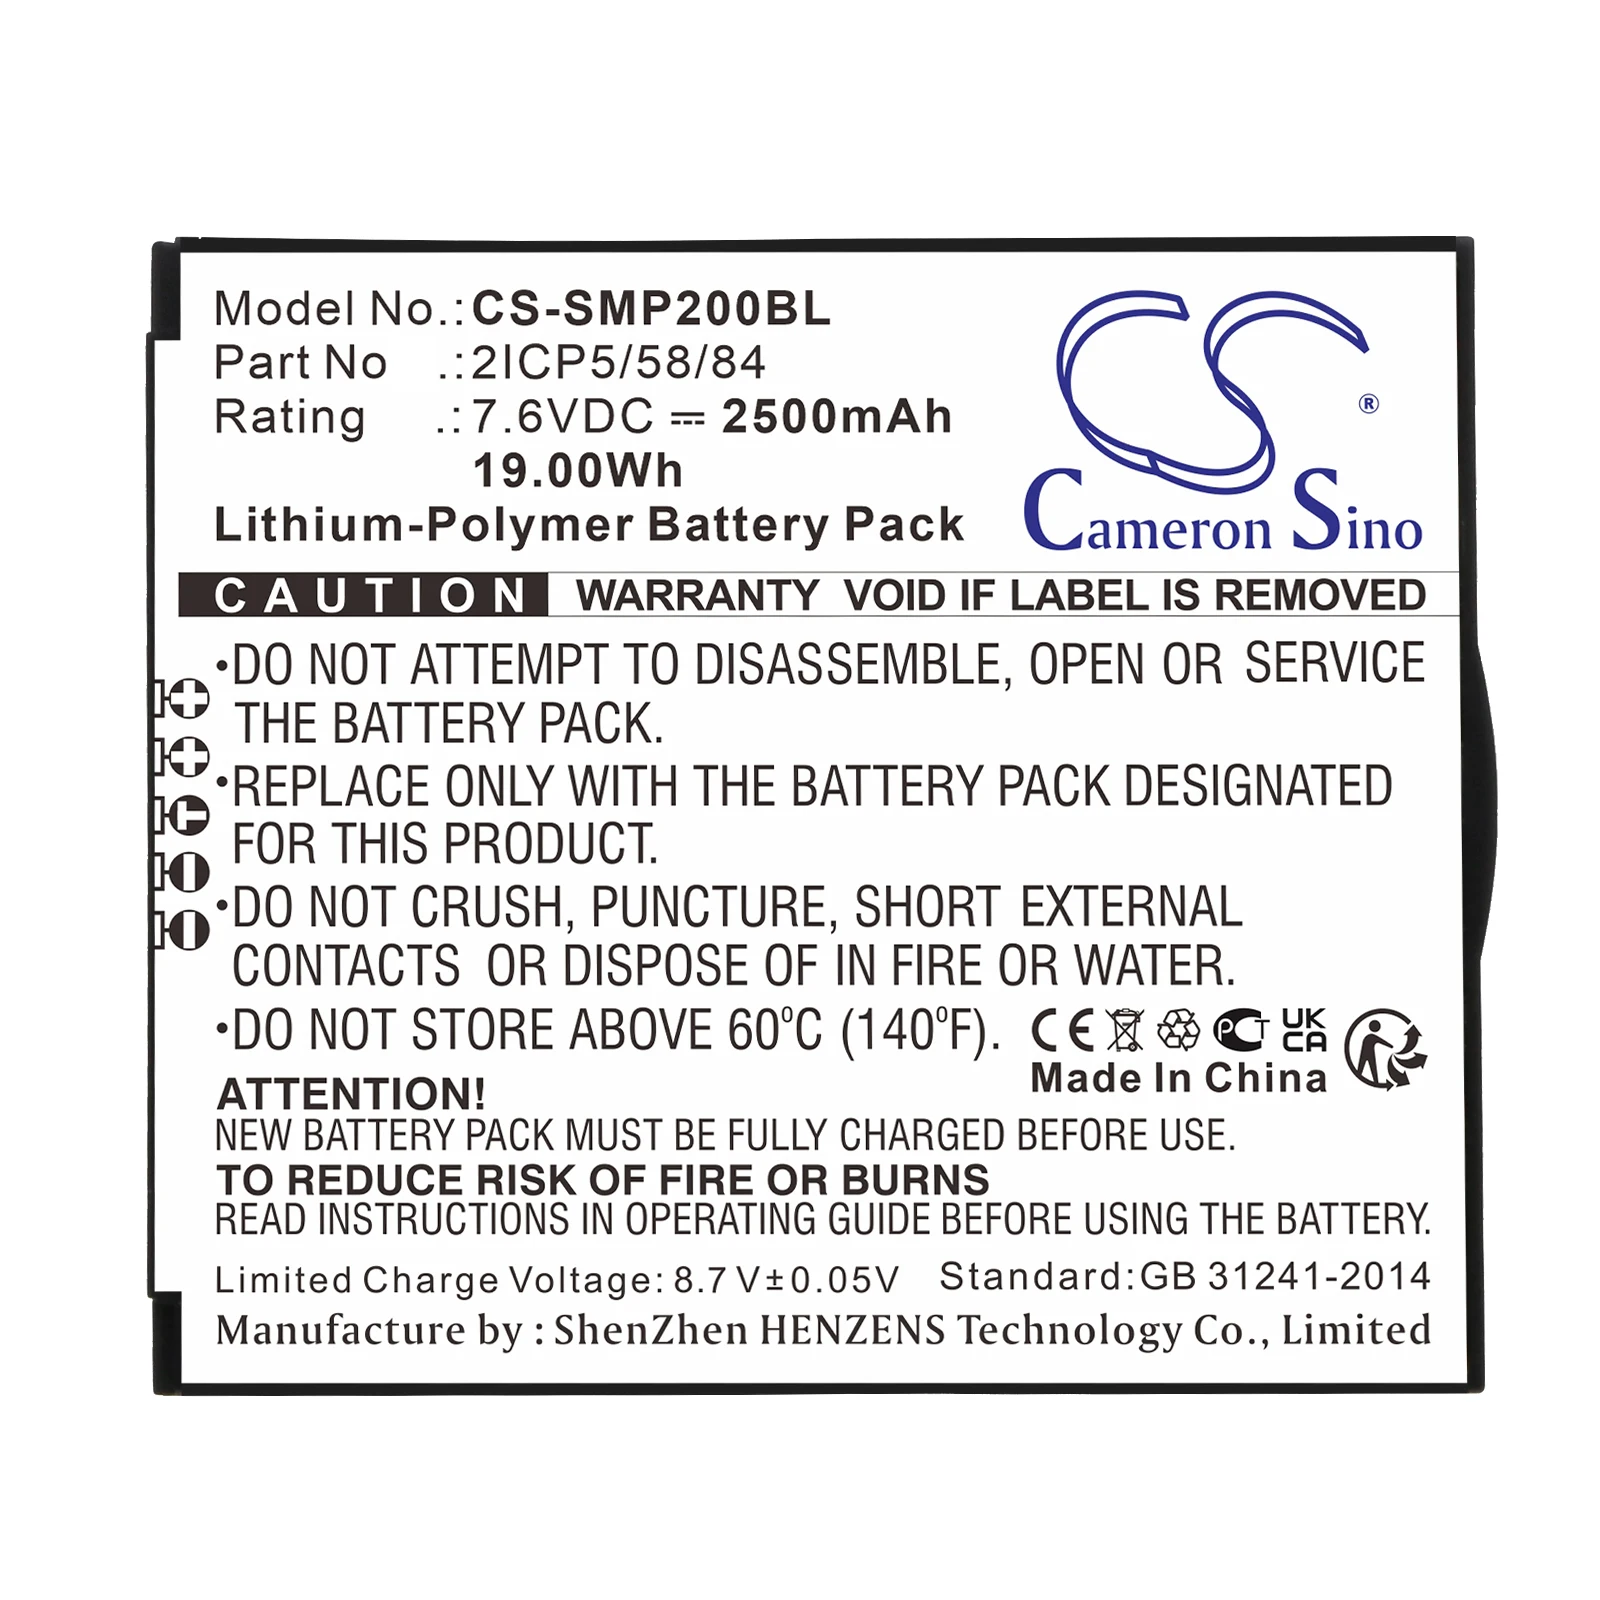 Cameron Sino 2500mAh Battery For Sunmi P2  T6900  2ICP5/58/84